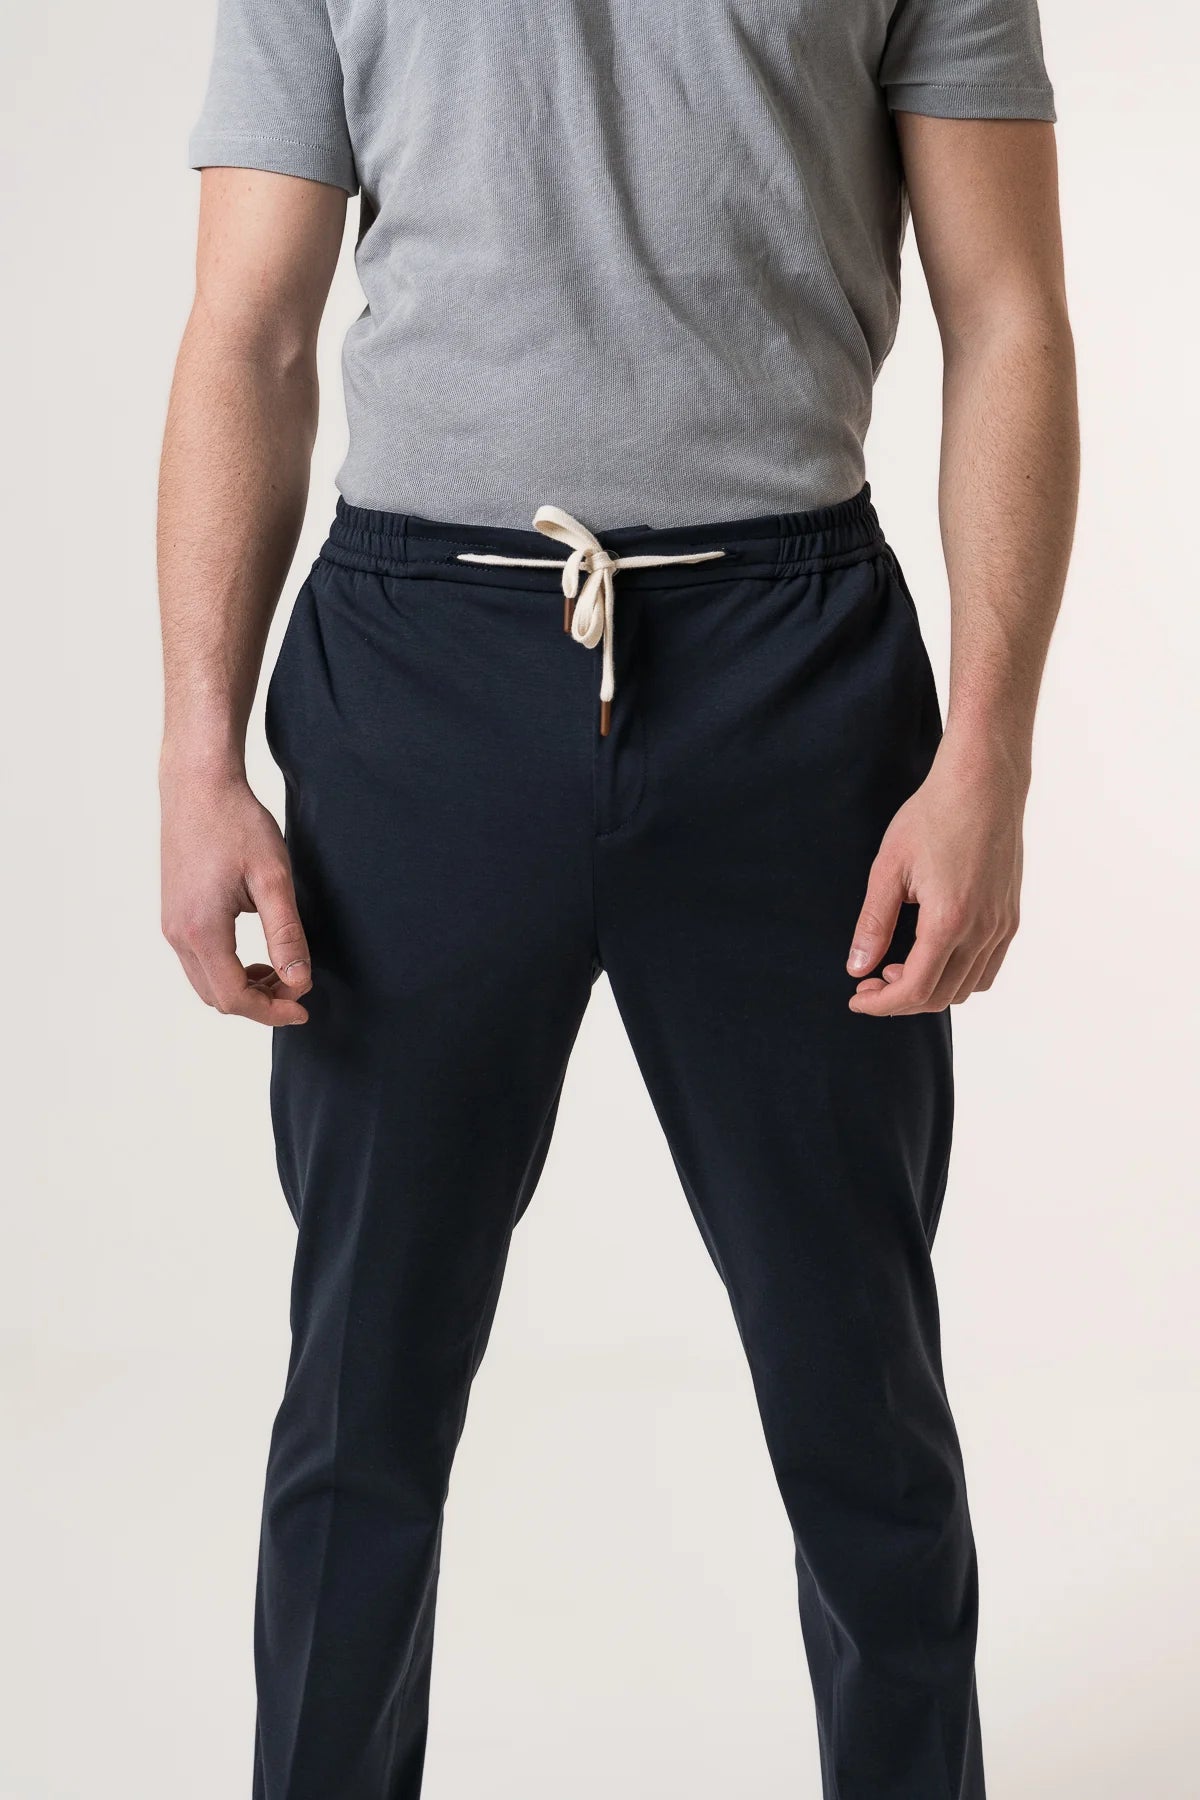 Pantalone con Elastico in Vita Bsettecento / Blu - Ideal Moda